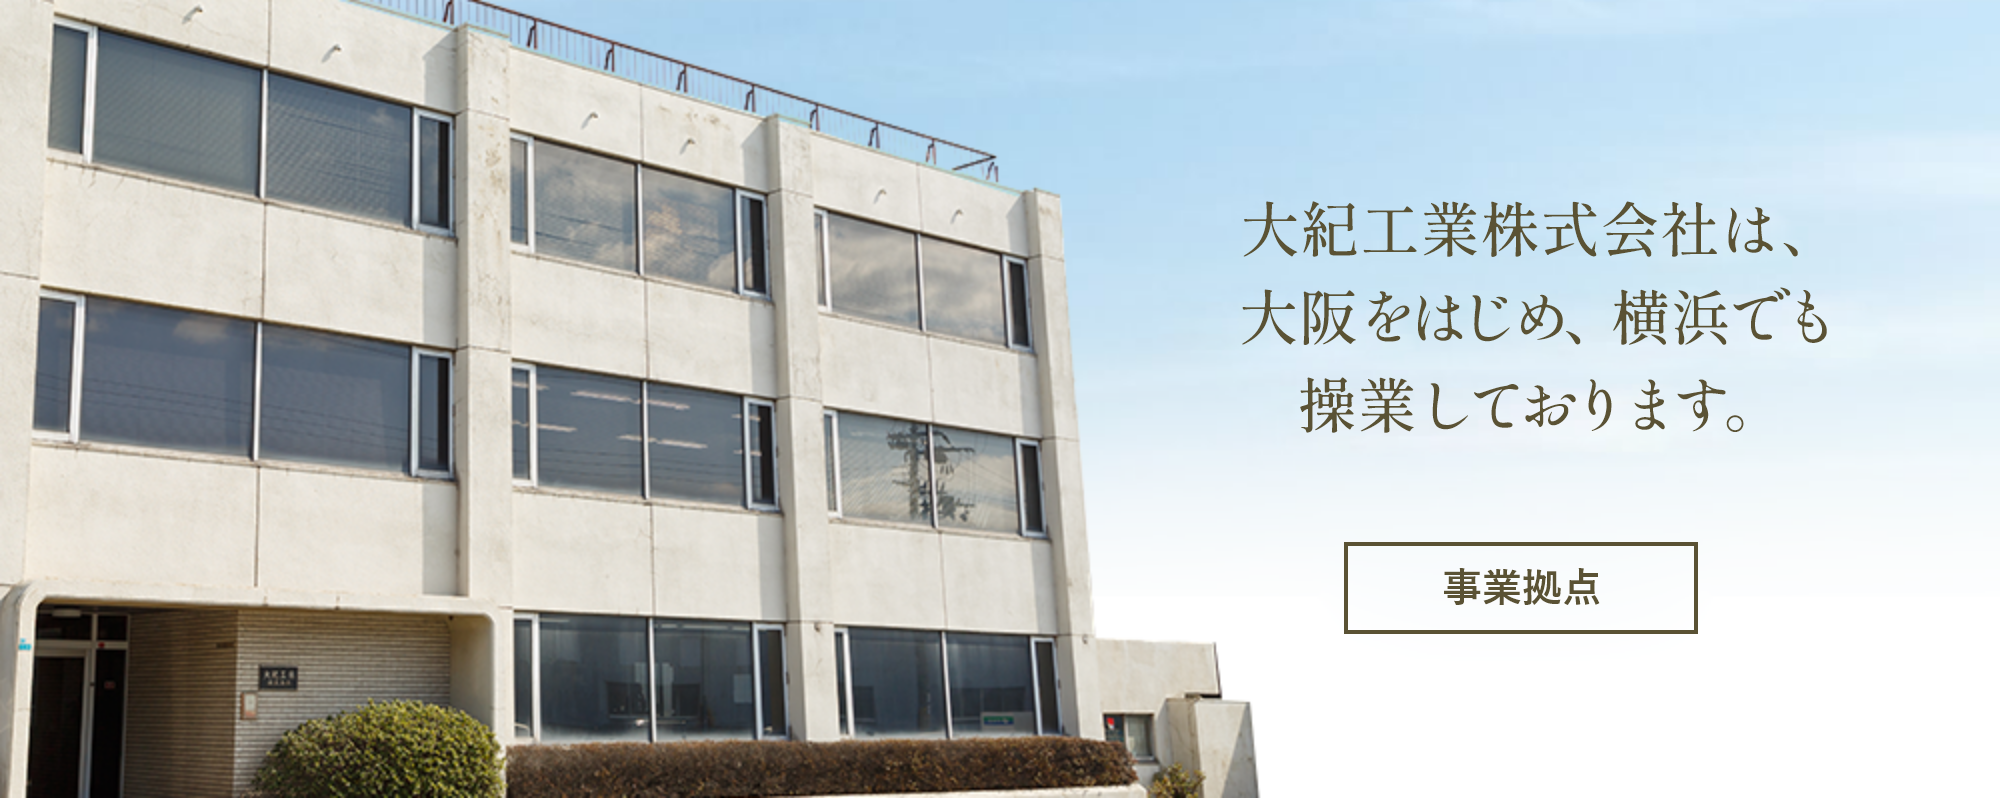 事業拠点：大紀工業株式会社は、大阪をはじめ、横浜、富山でも操業しております。